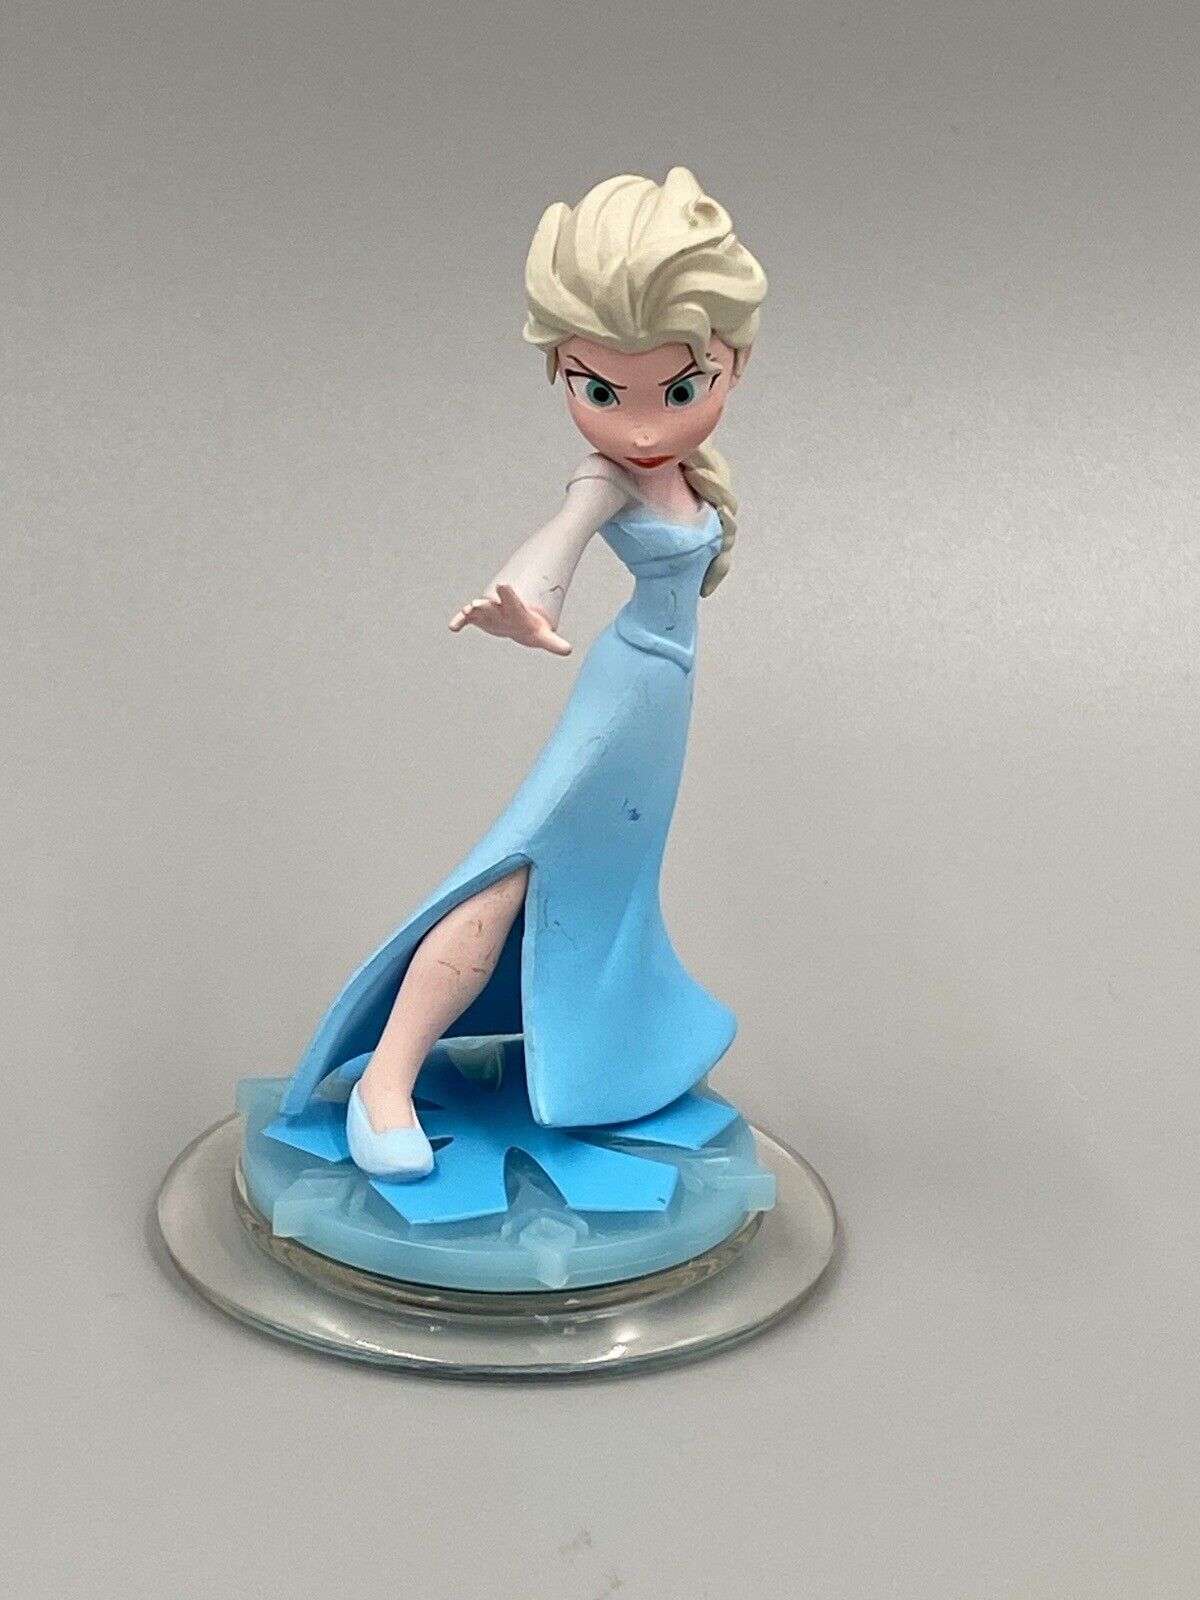 Disney Infinity Frozen Elsa 3.5” Figure Only